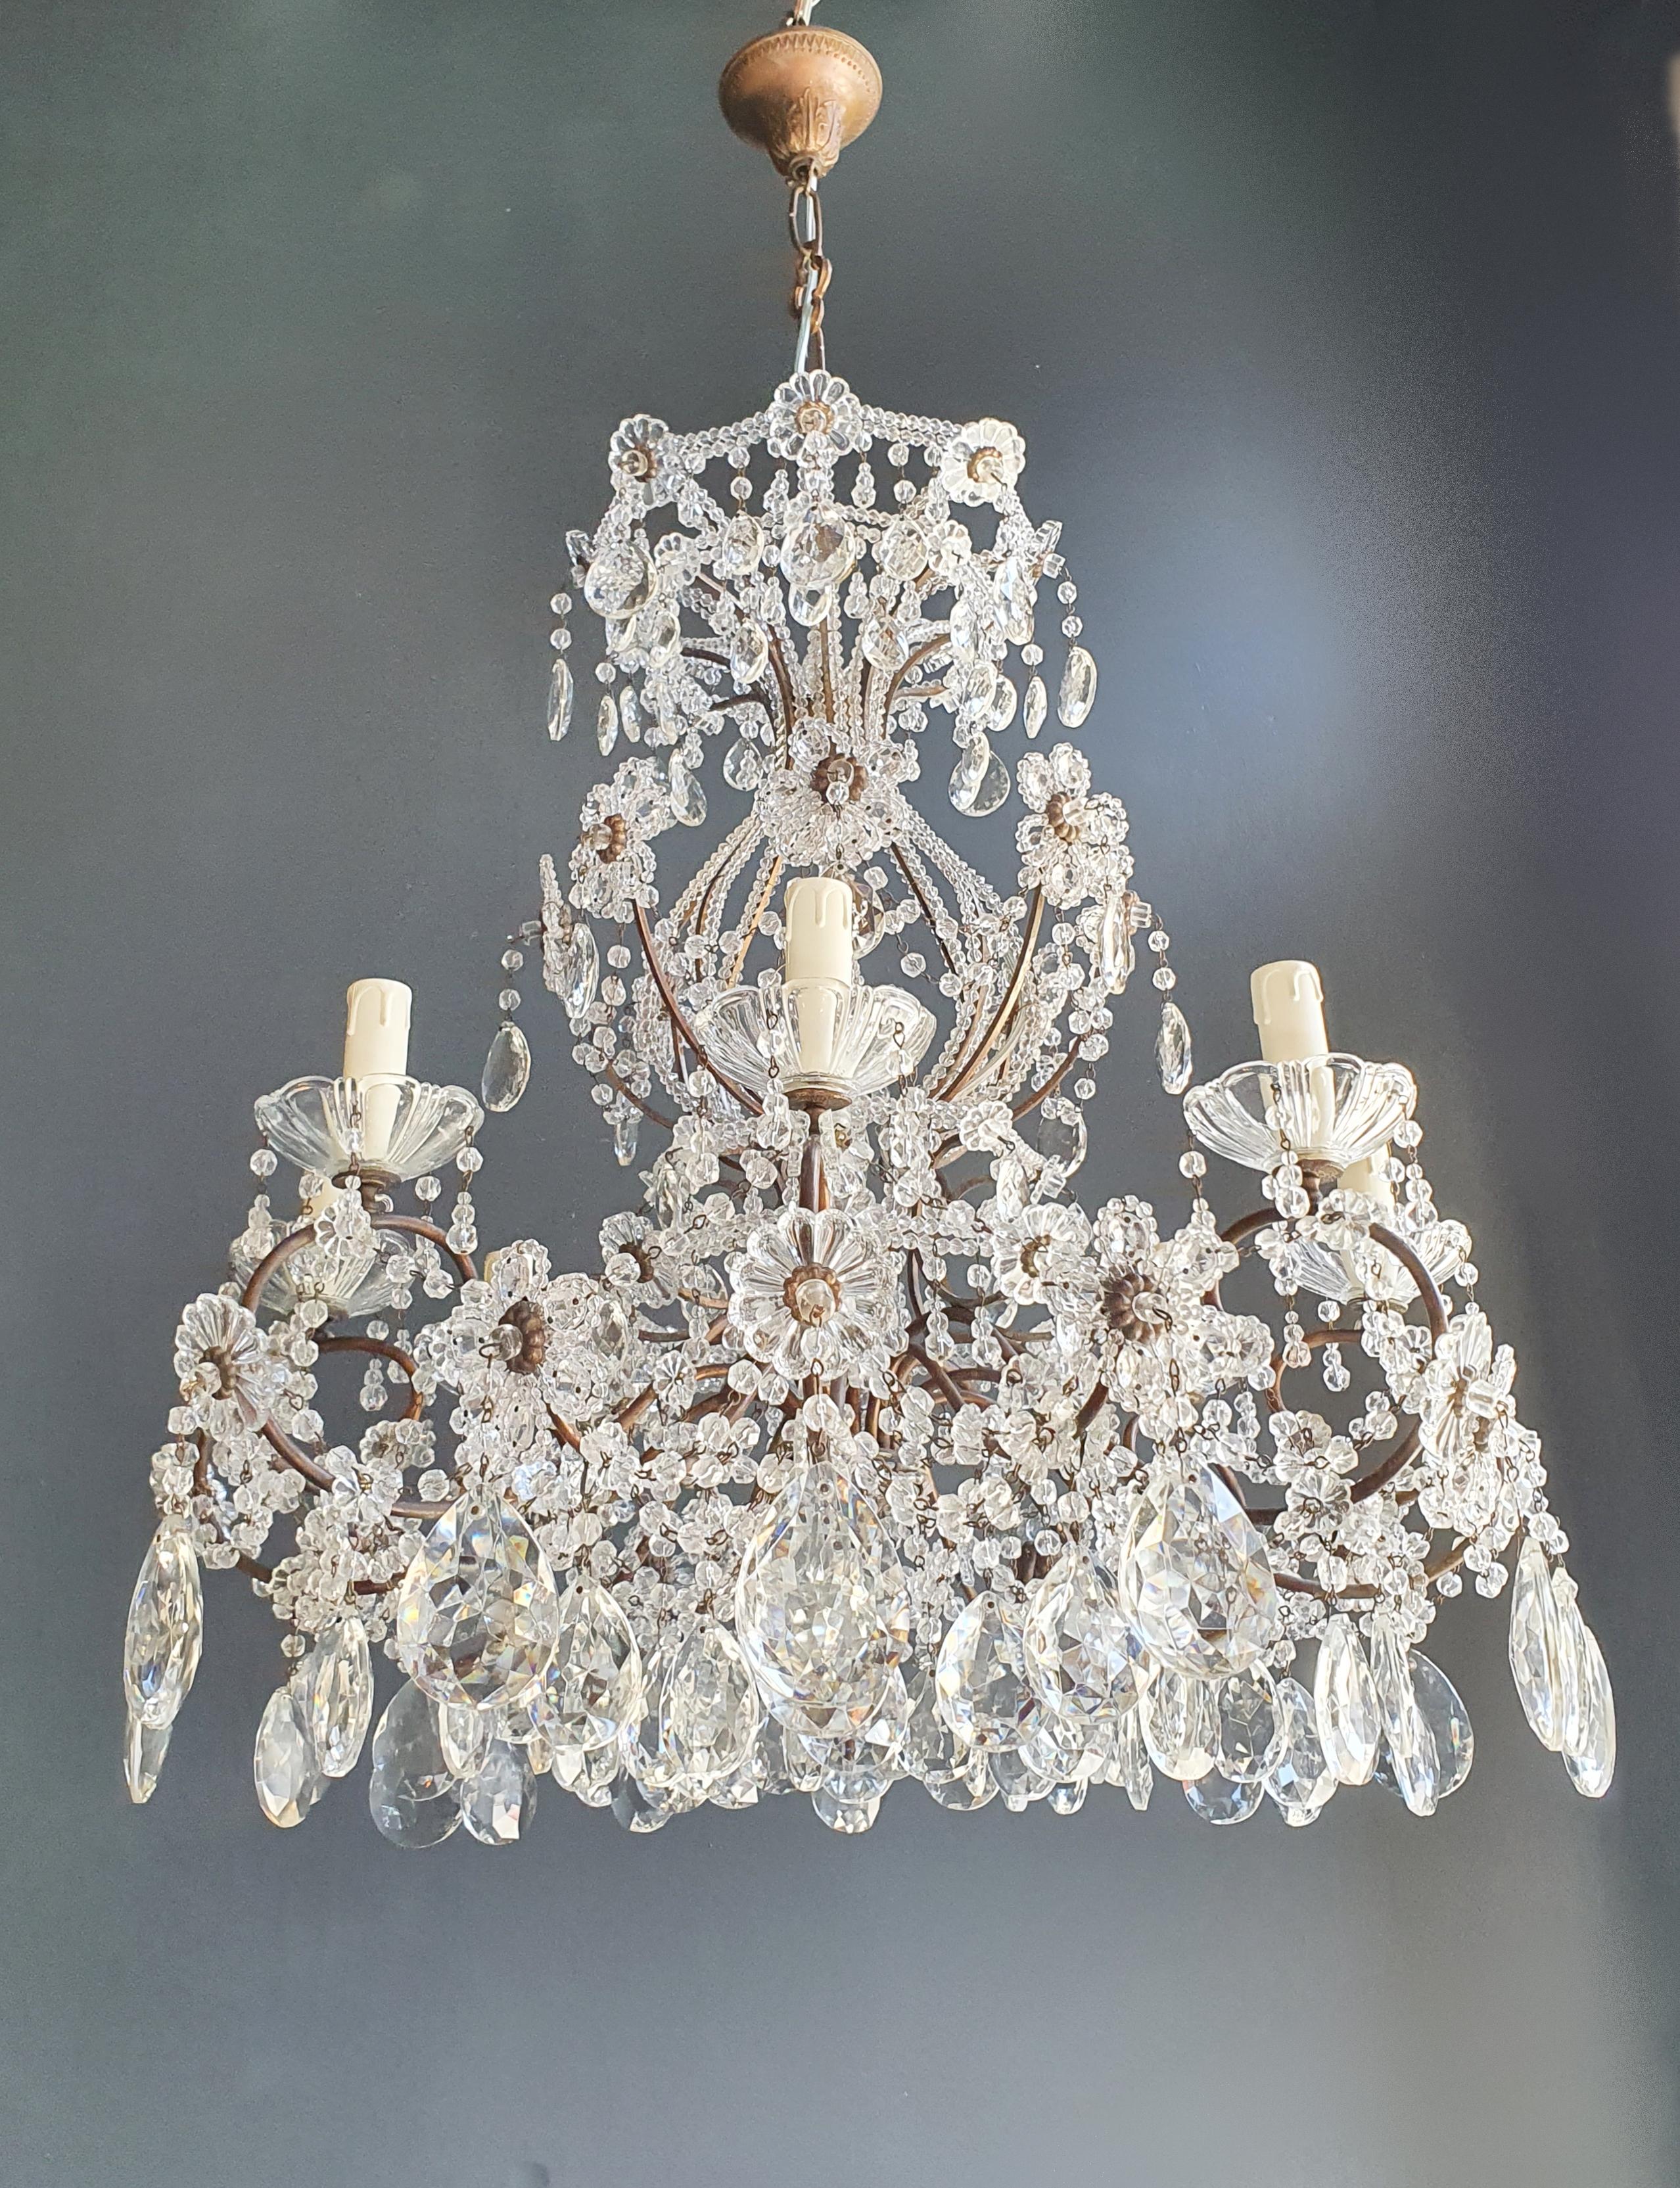 Brass Crystal Chandelier Antique Ceiling Lamp Lustre Art Nouveau Lamp 1